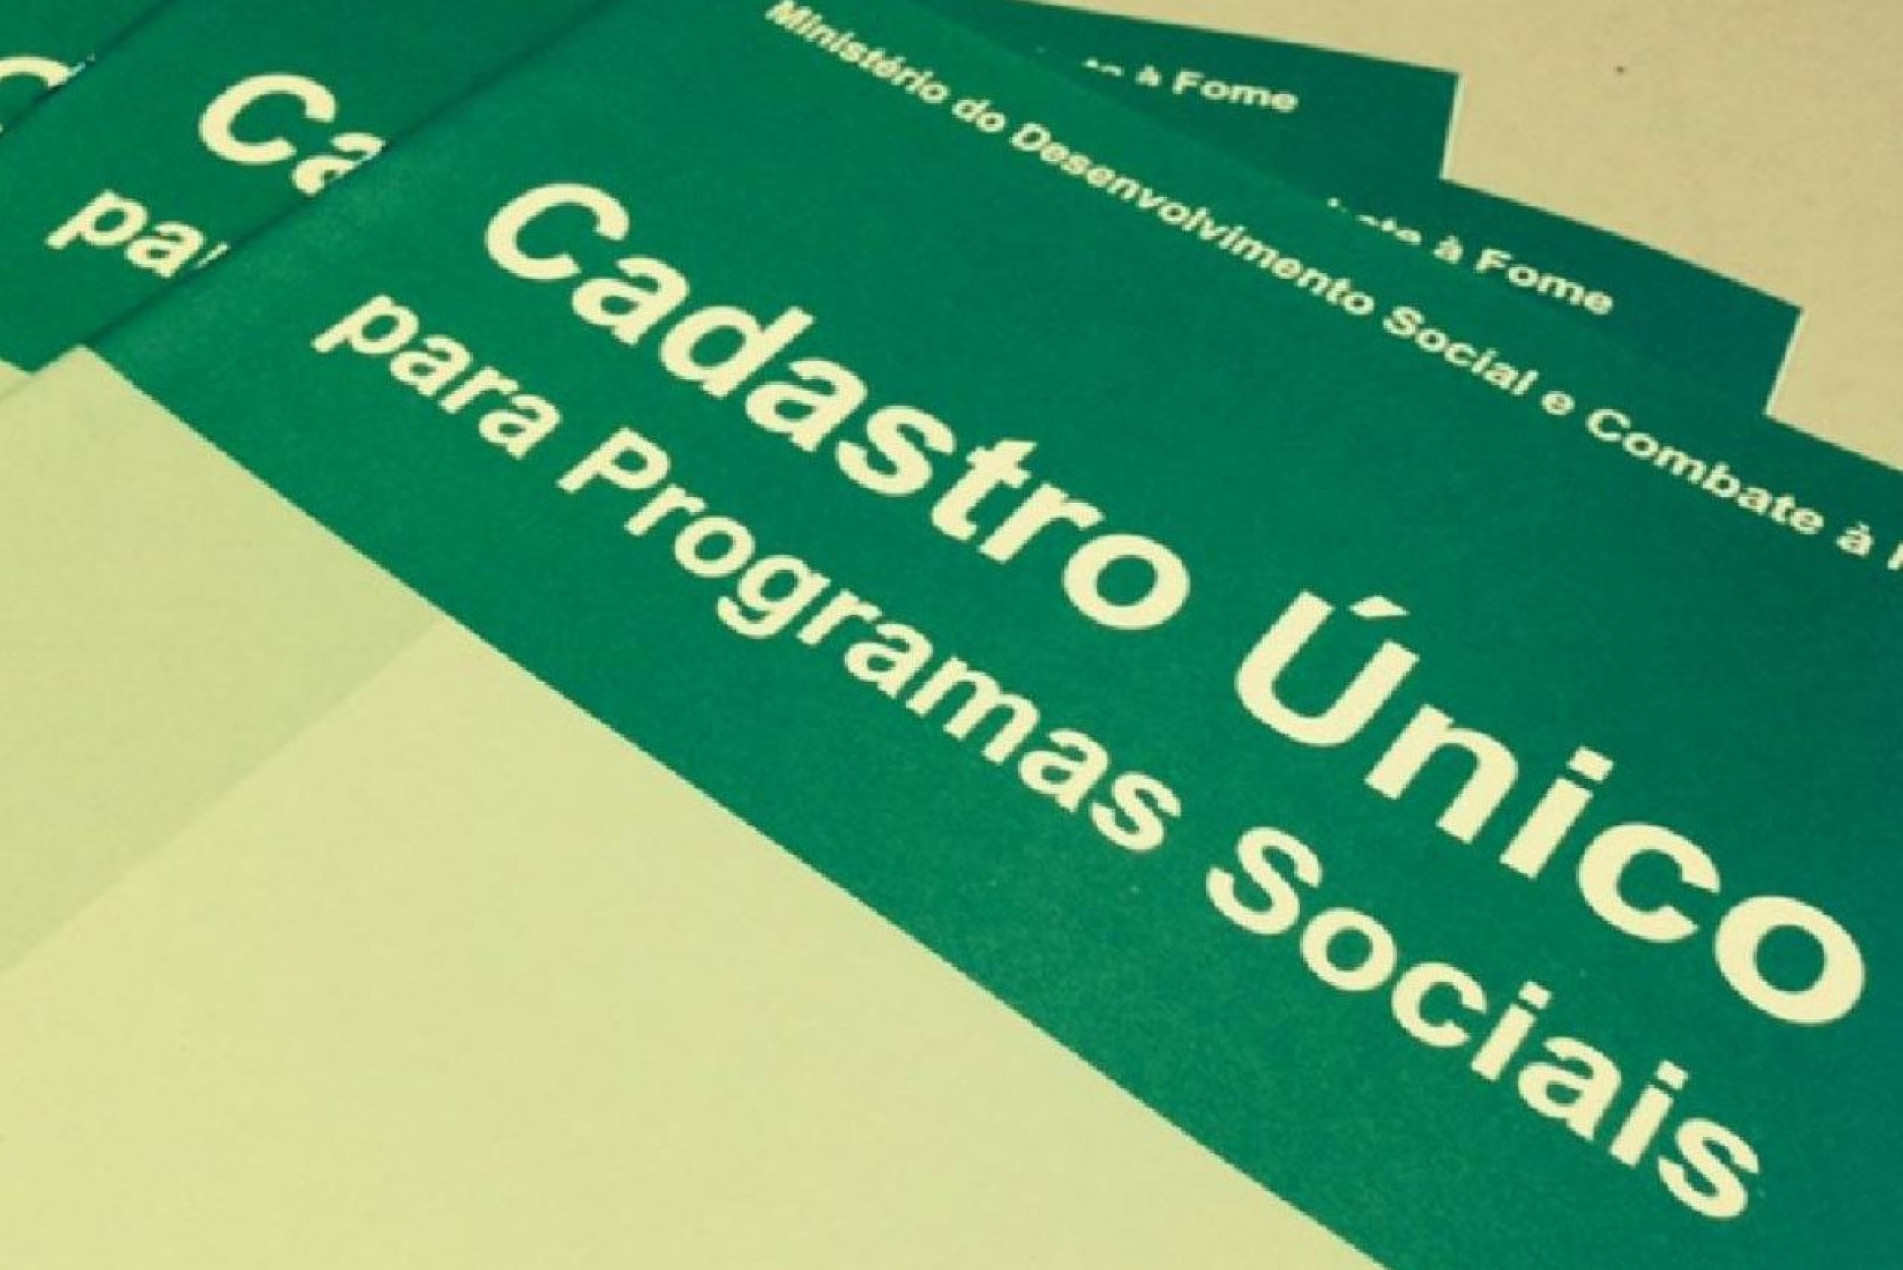 O cadastro é usado pelo governo federal para definir os contemplados em programas sociais, como o Auxílio Brasil